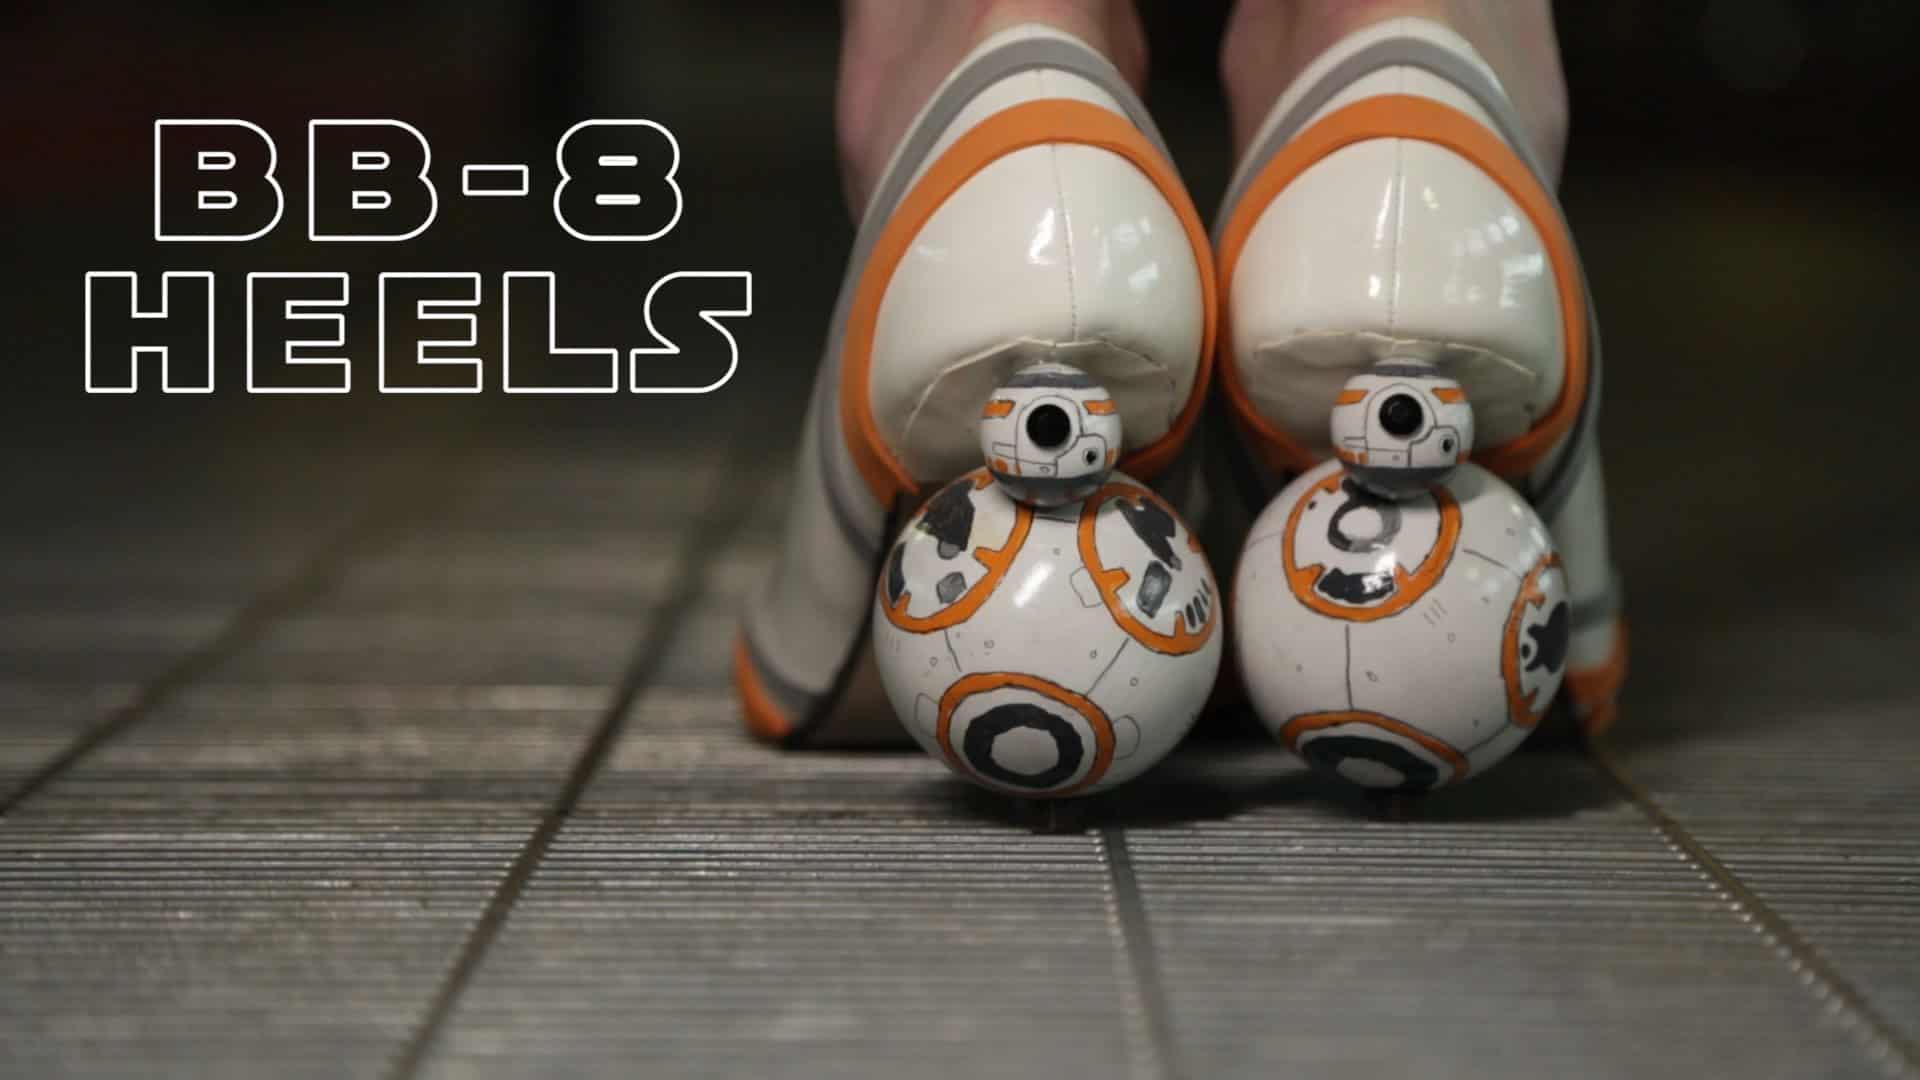 Wysokie szpilki Star Wars BB-8